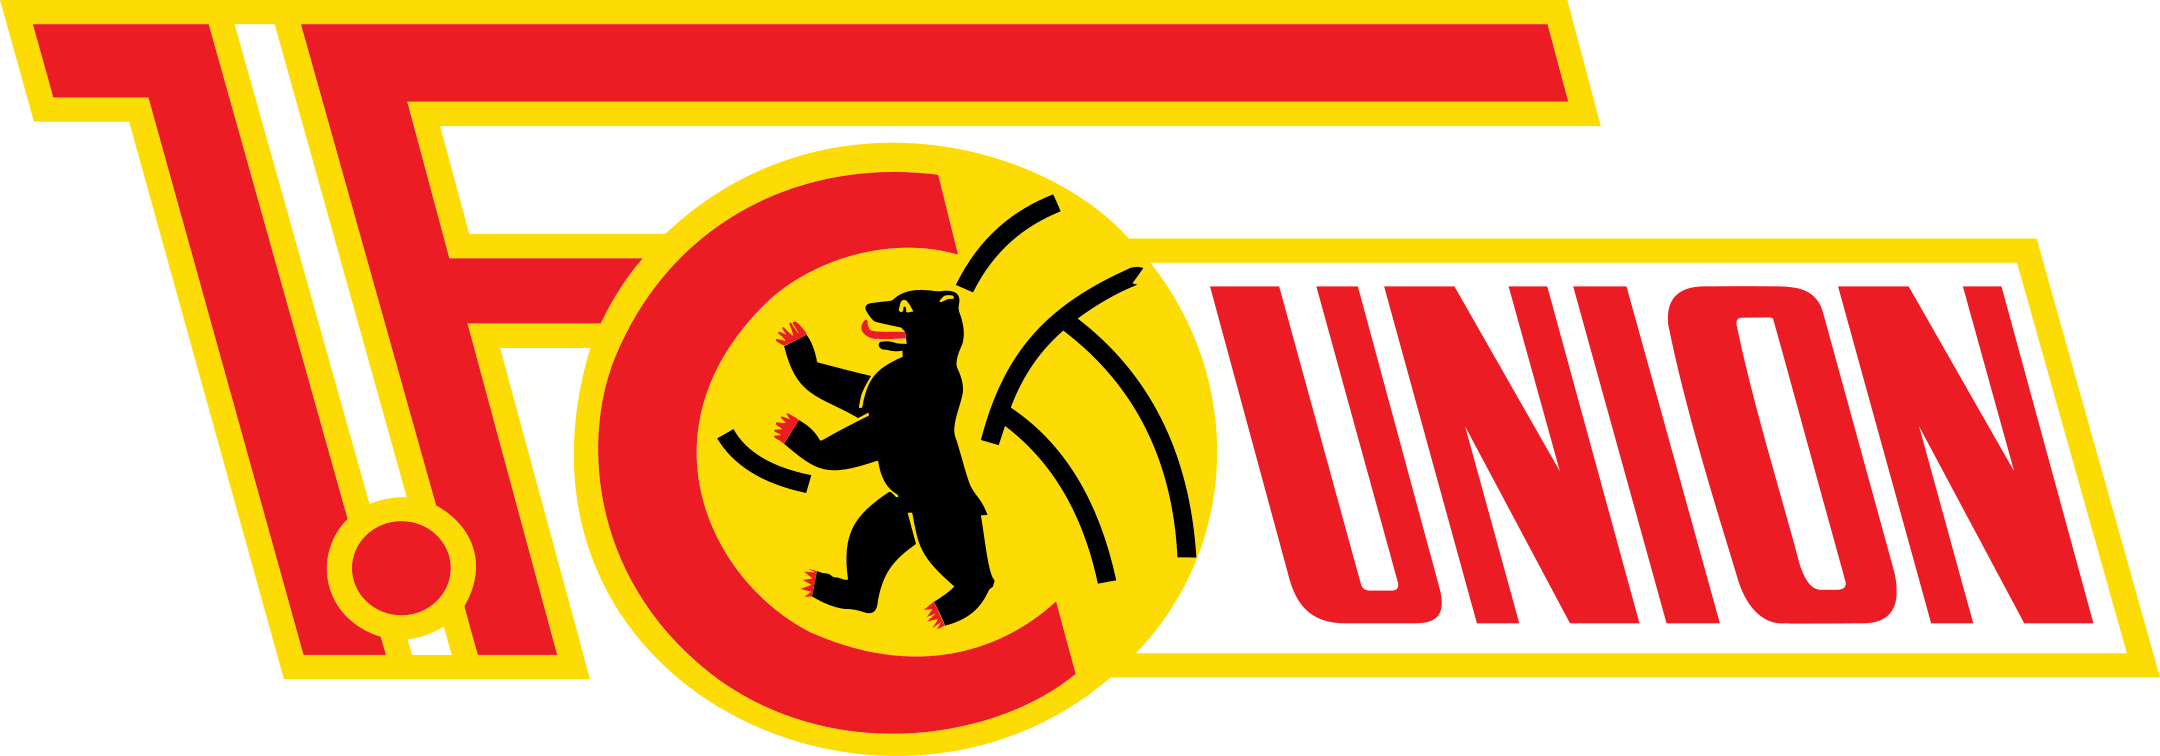 fc union berlin logo 1 - FC Union Berlin Logo